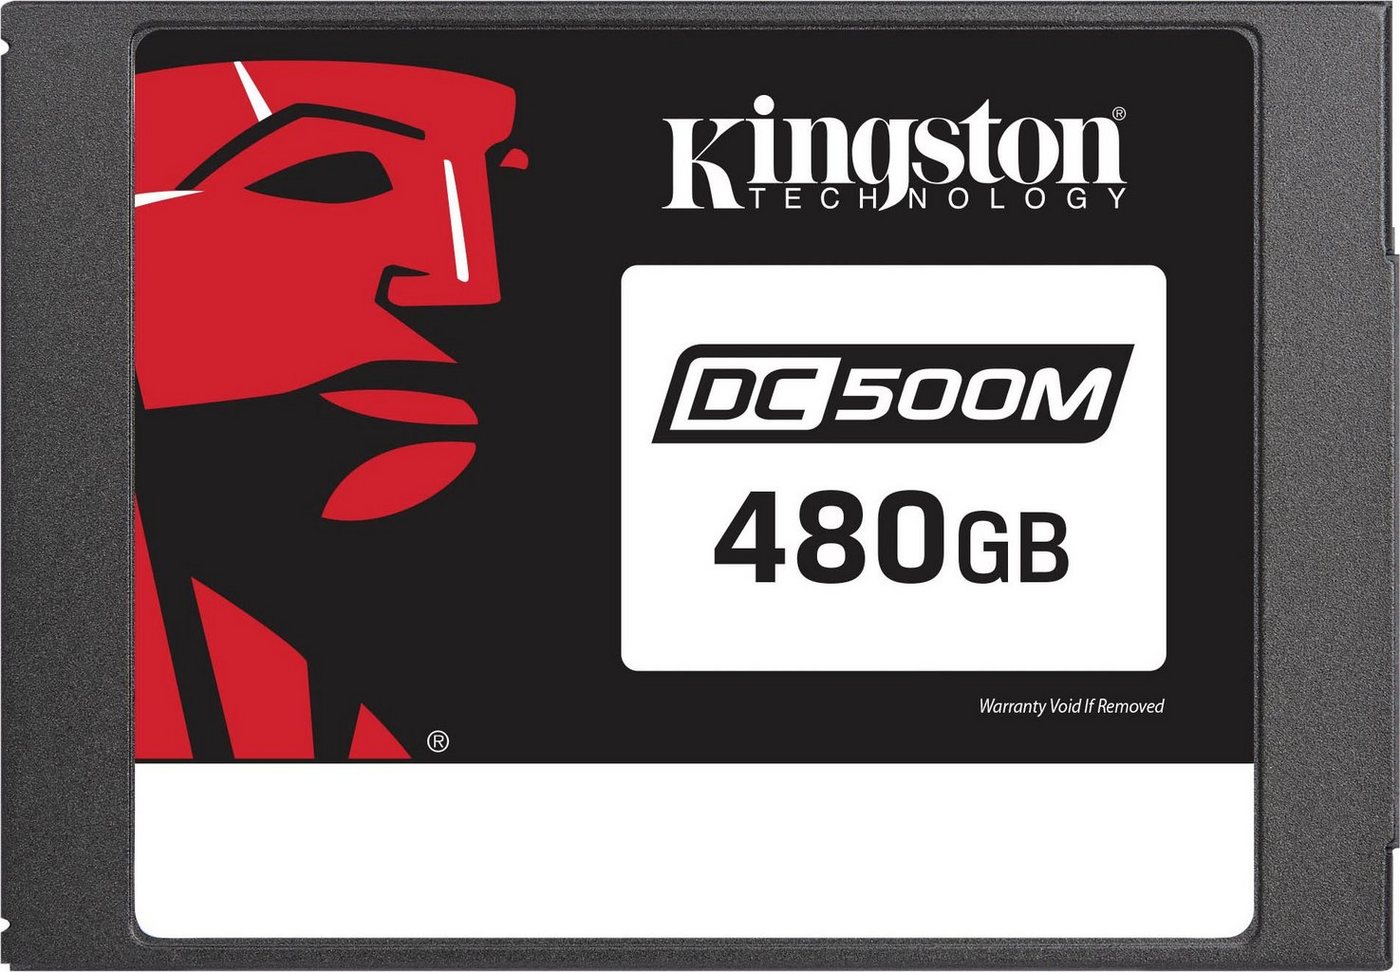 Kingston DC500M Enterprise 480GB interne SSD (480 GB) 2,5 555 MB/S Lesegeschwindigkeit, 520 MB/S Schreibgeschwindigkeit" von Kingston